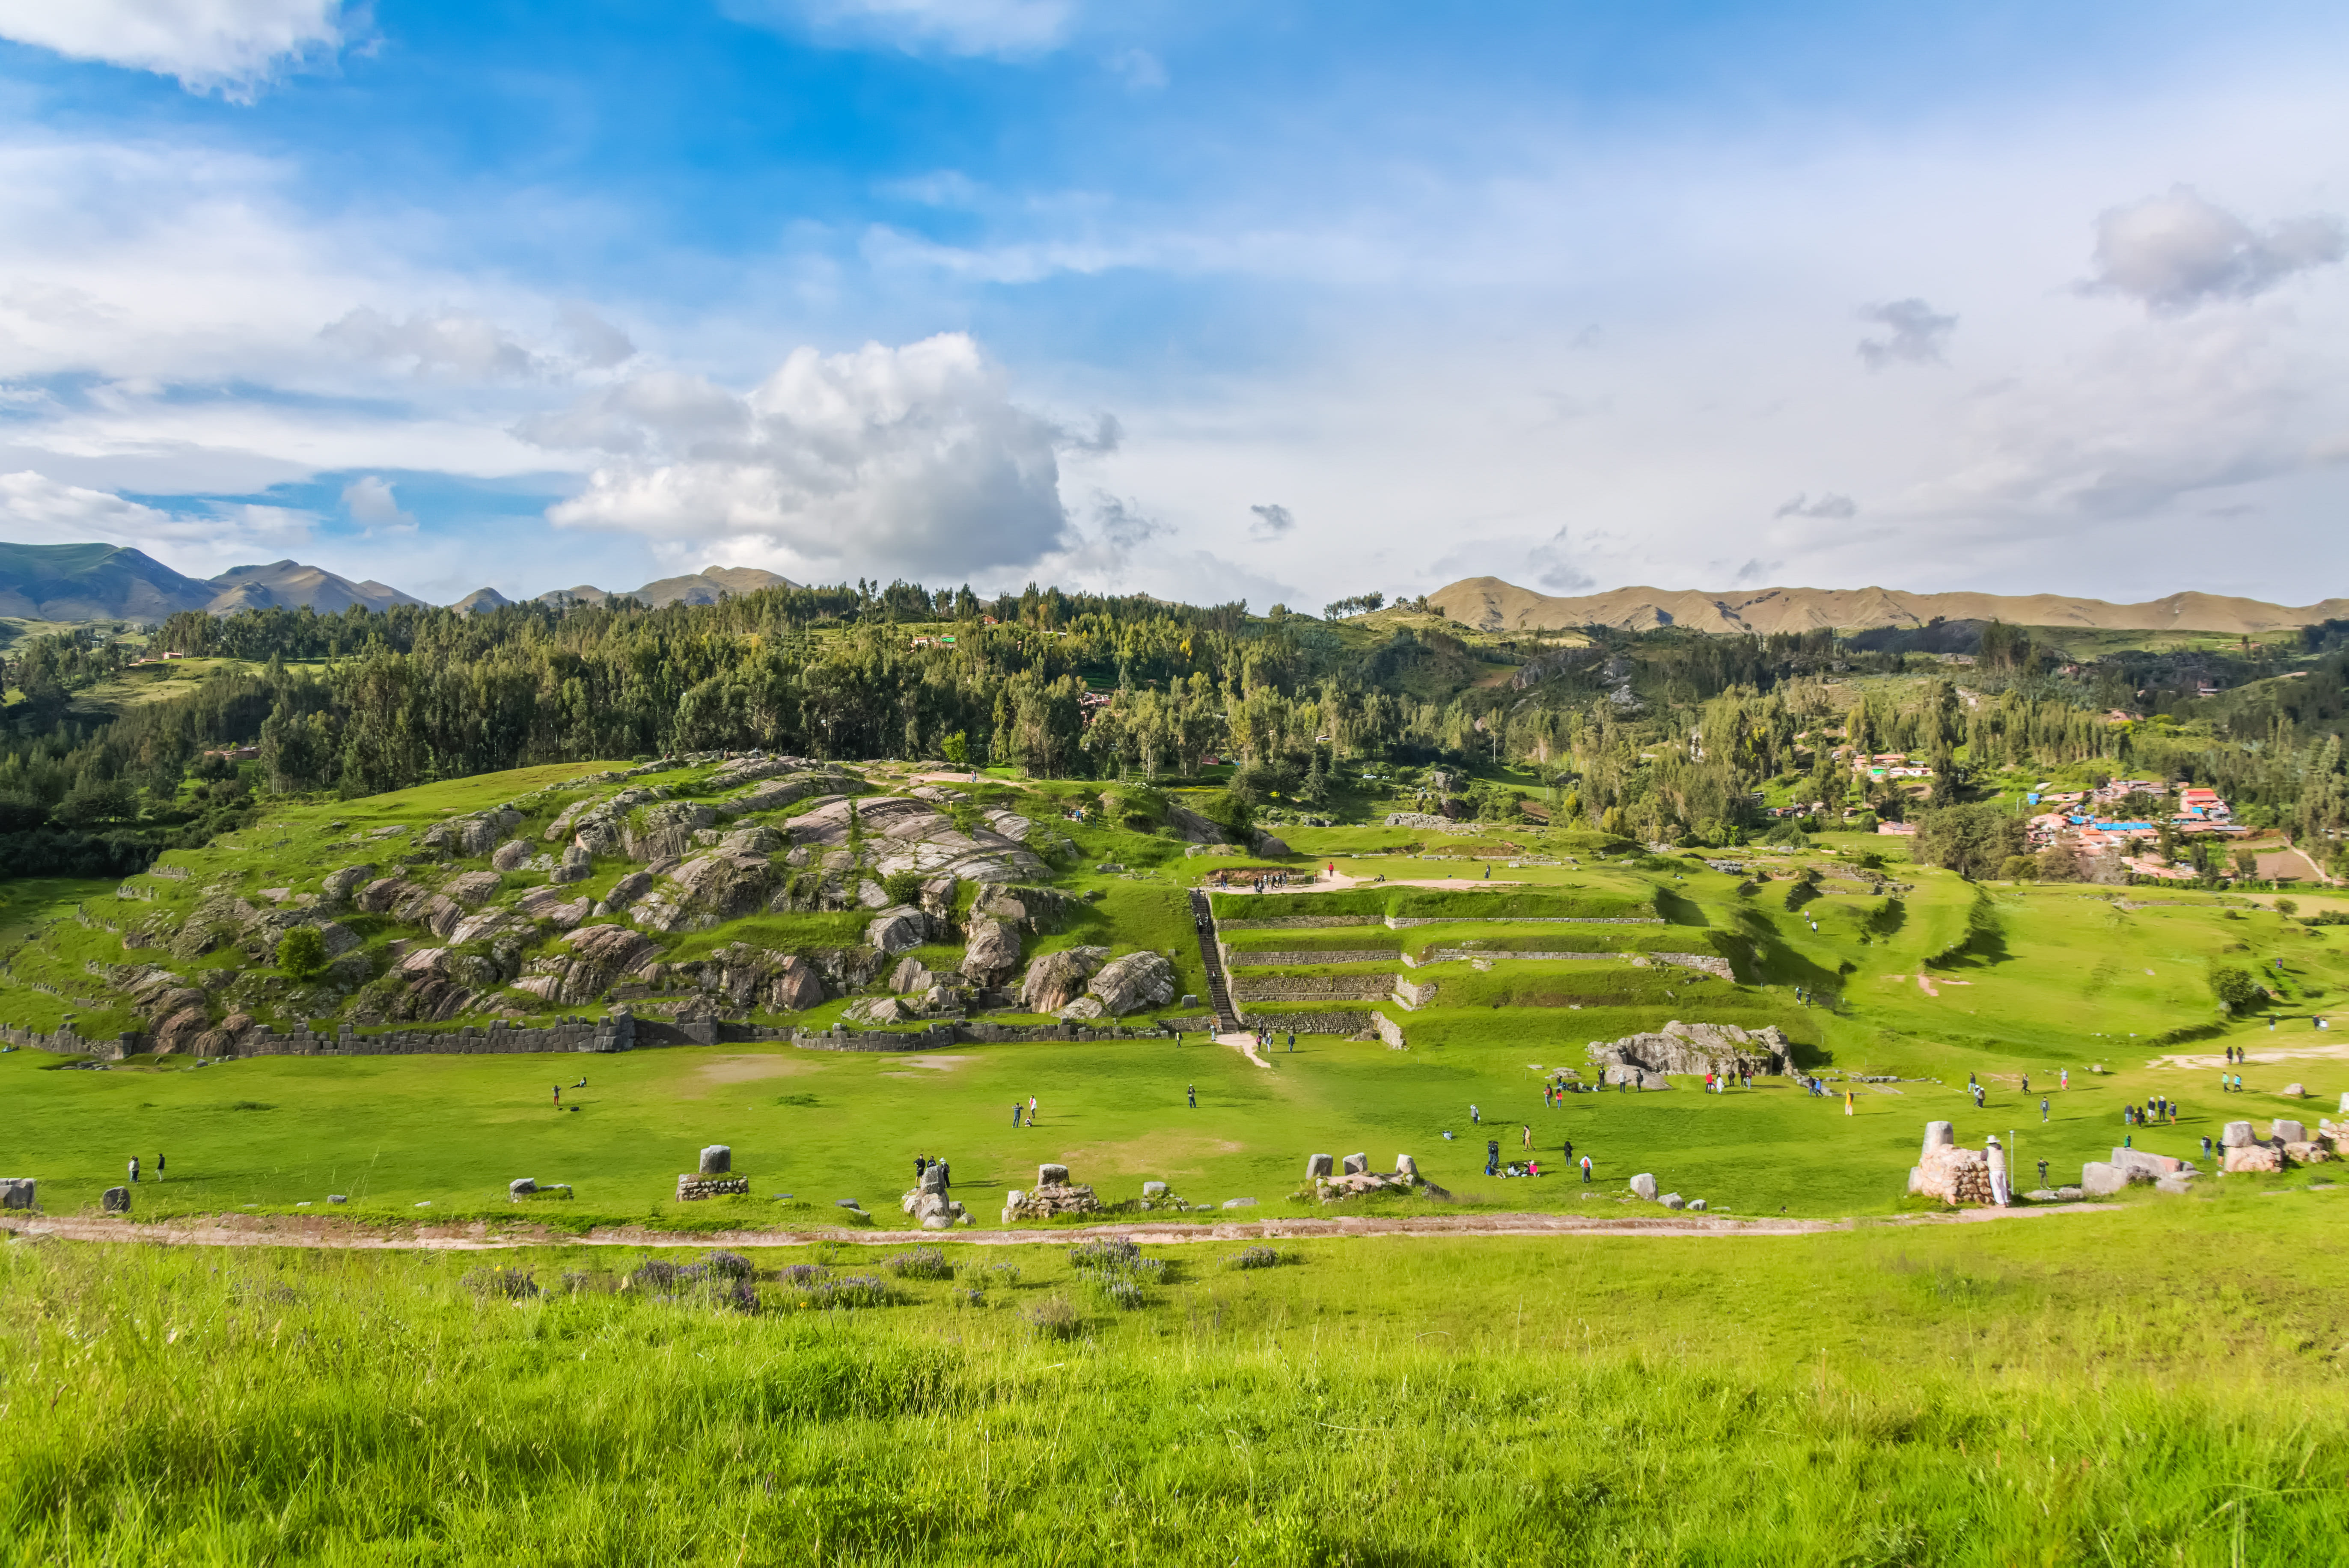 llamas-alpacas-sacsayhuaman-incas-ruins-peruvian-andes-cusco-peru-2.jpg